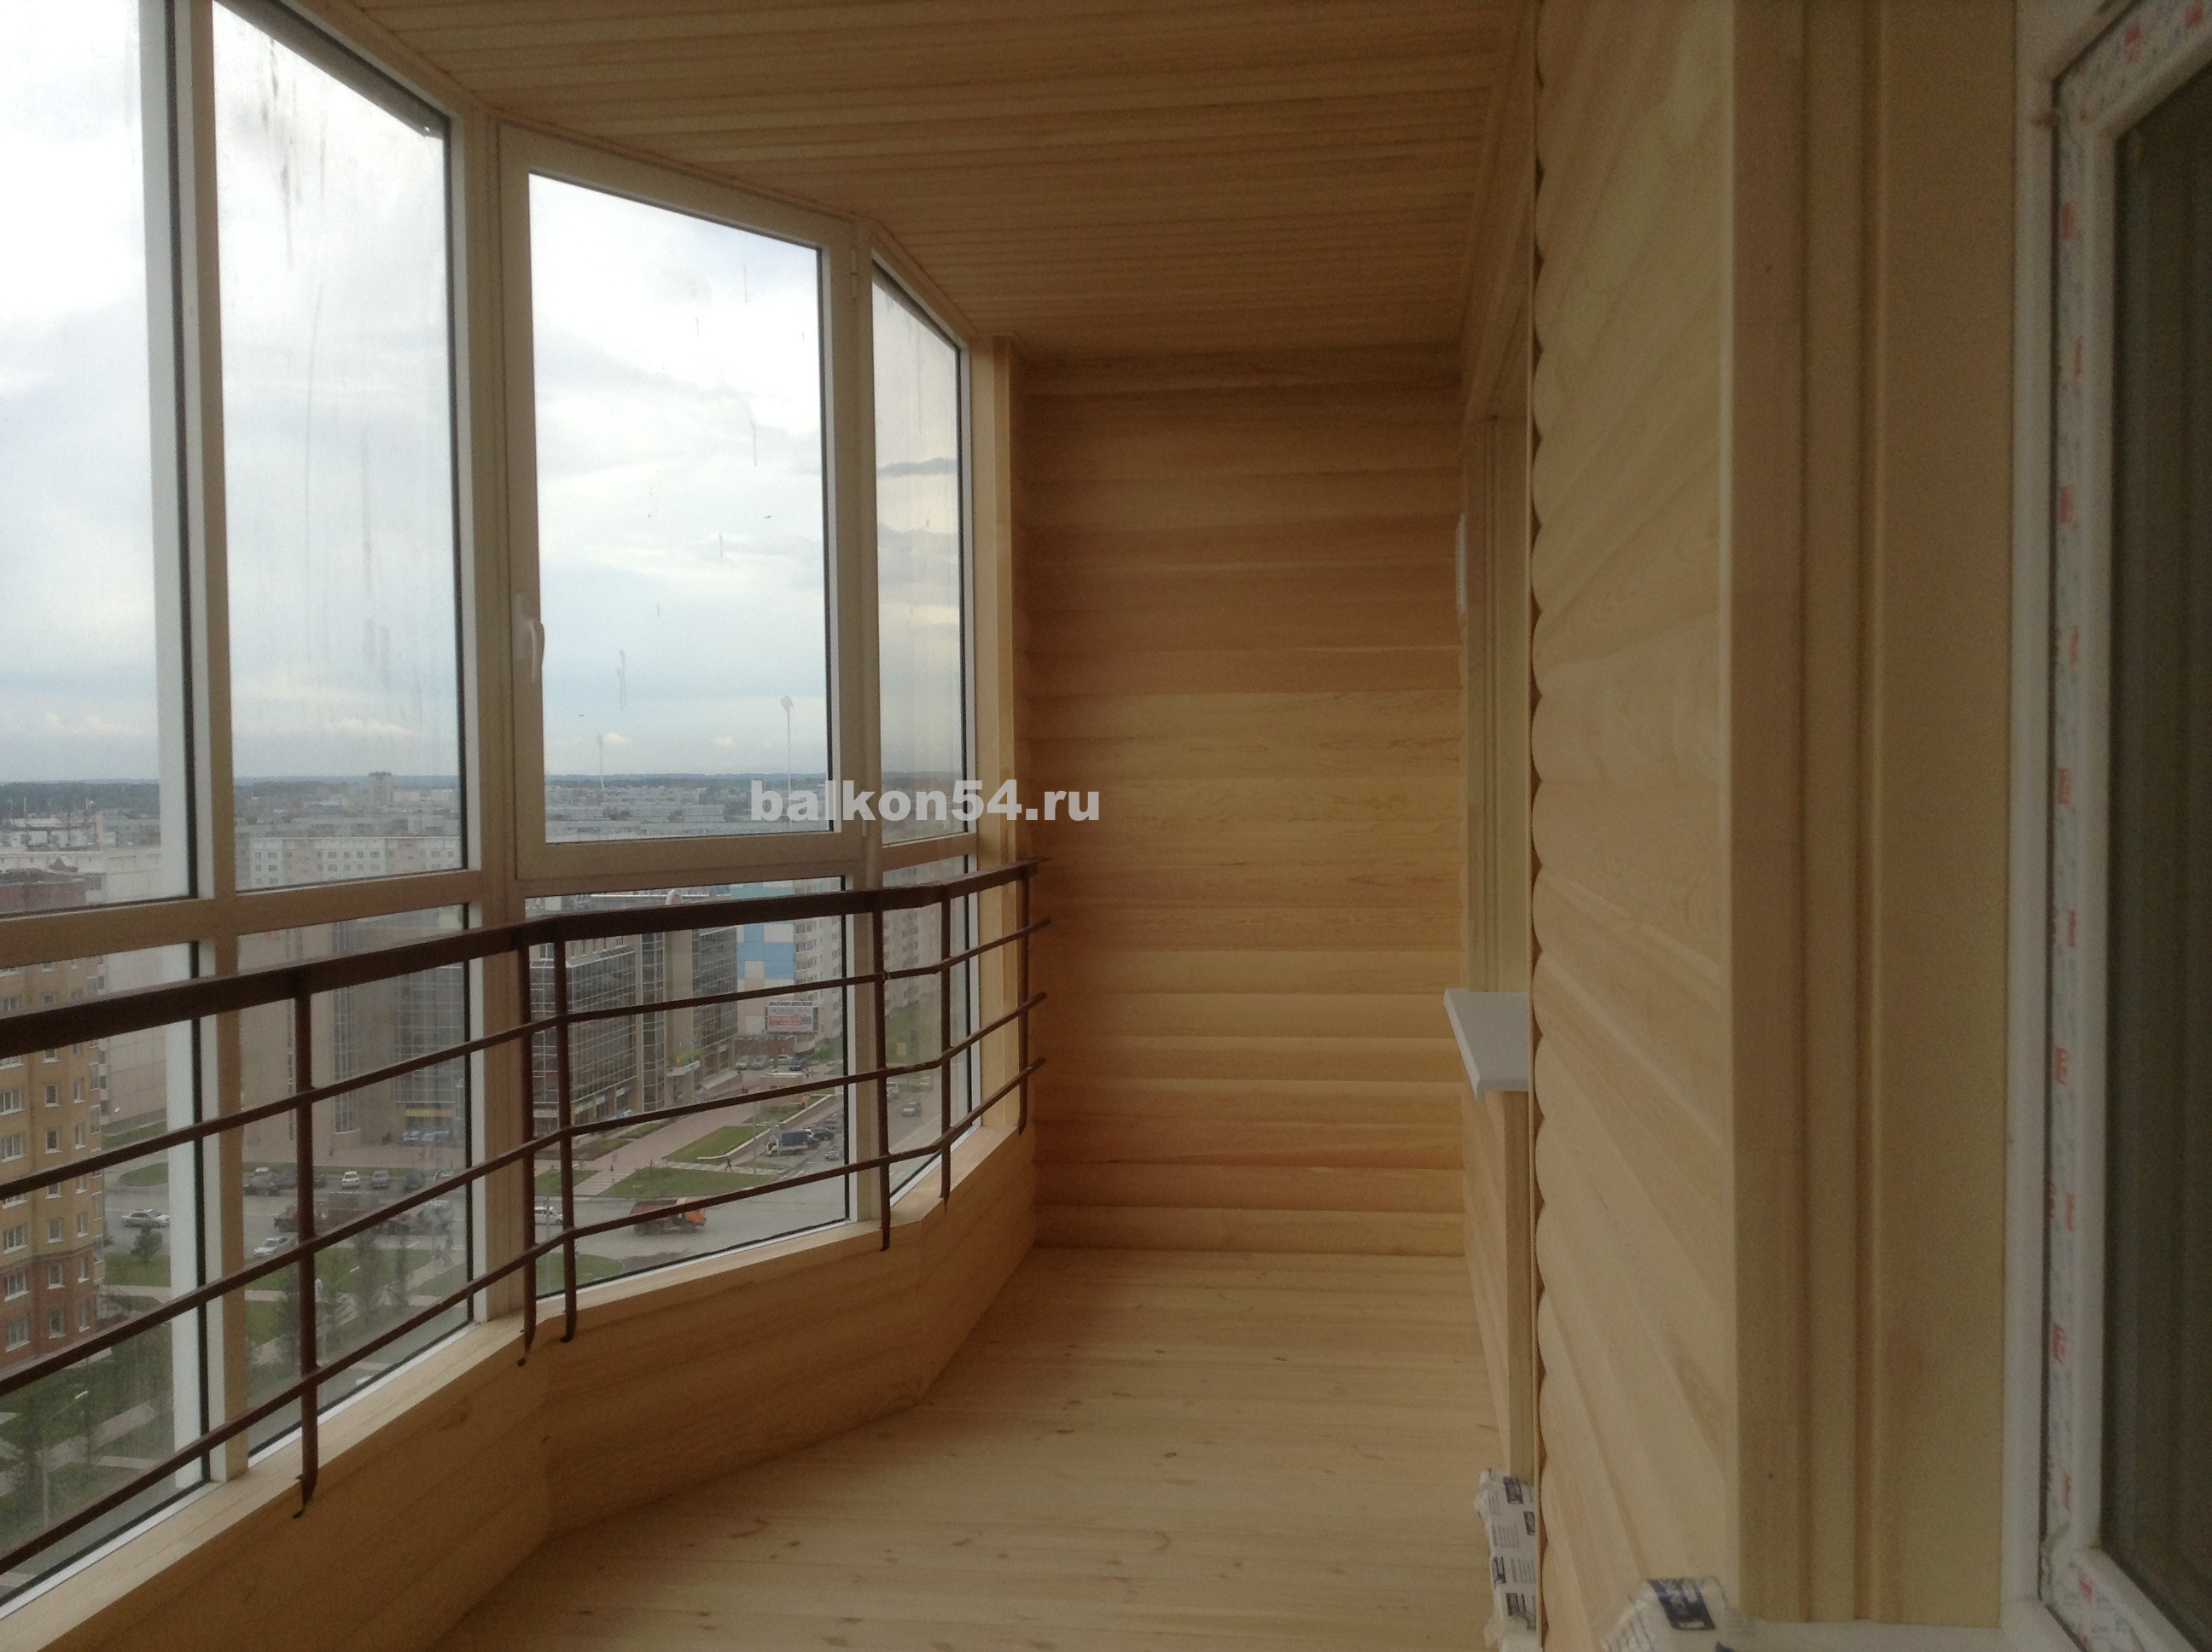 Отделка балкона блок хаусом – цены и фото